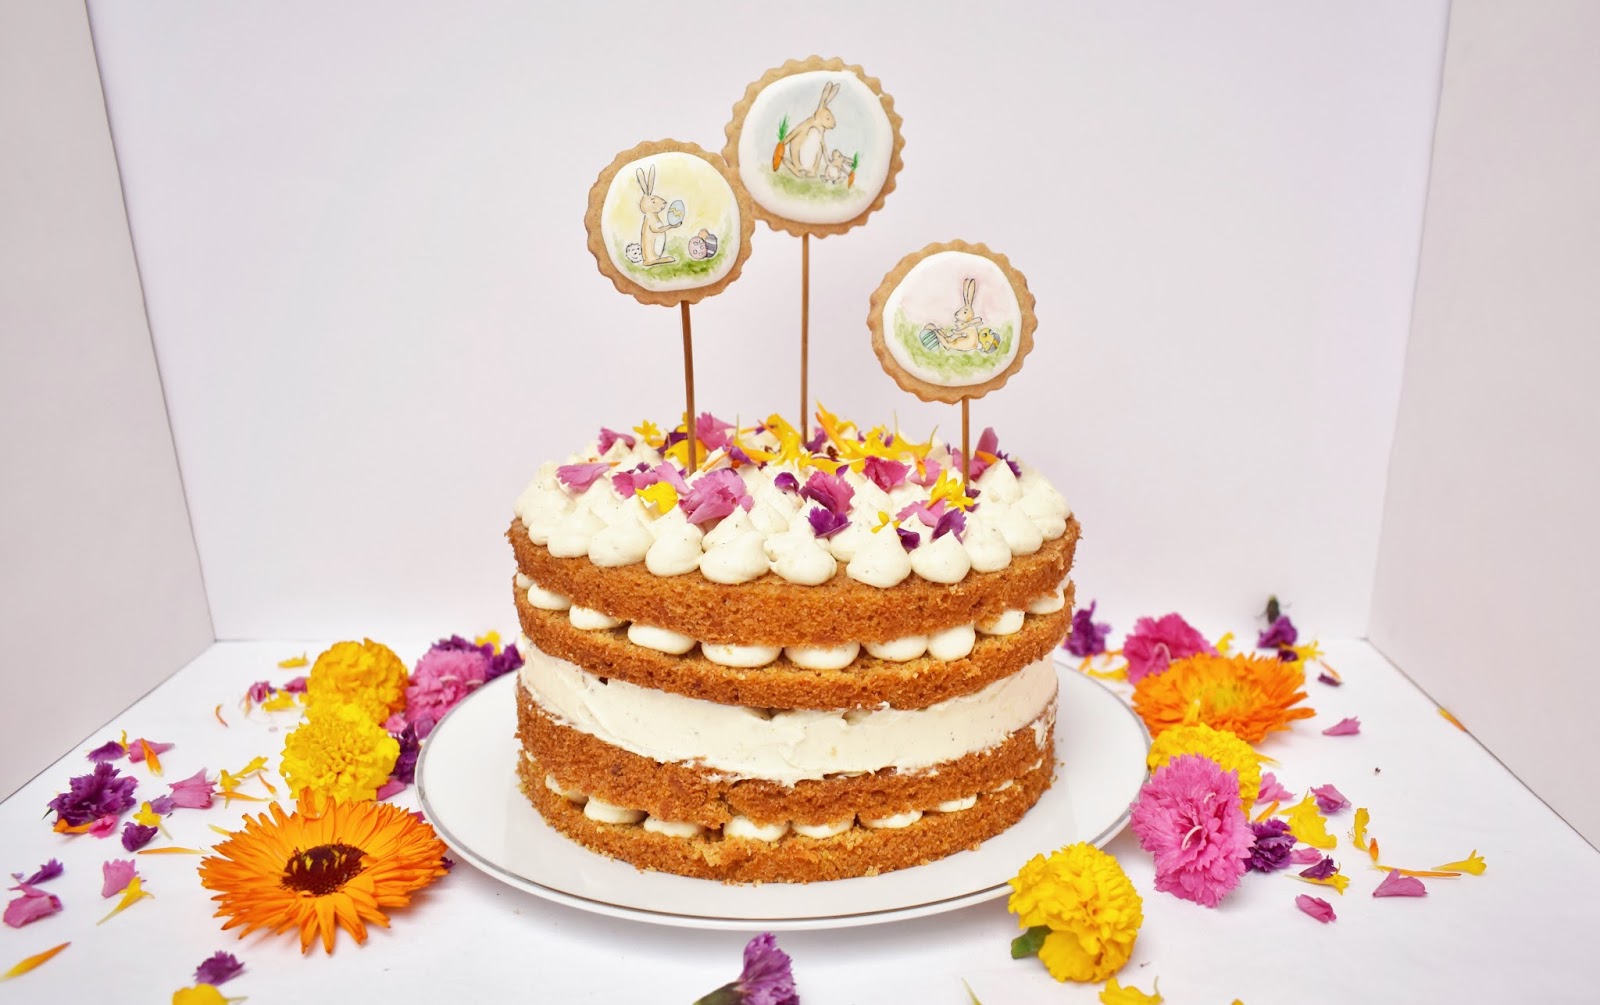 Carrot Cake / Rübli Torte / Oster Torte